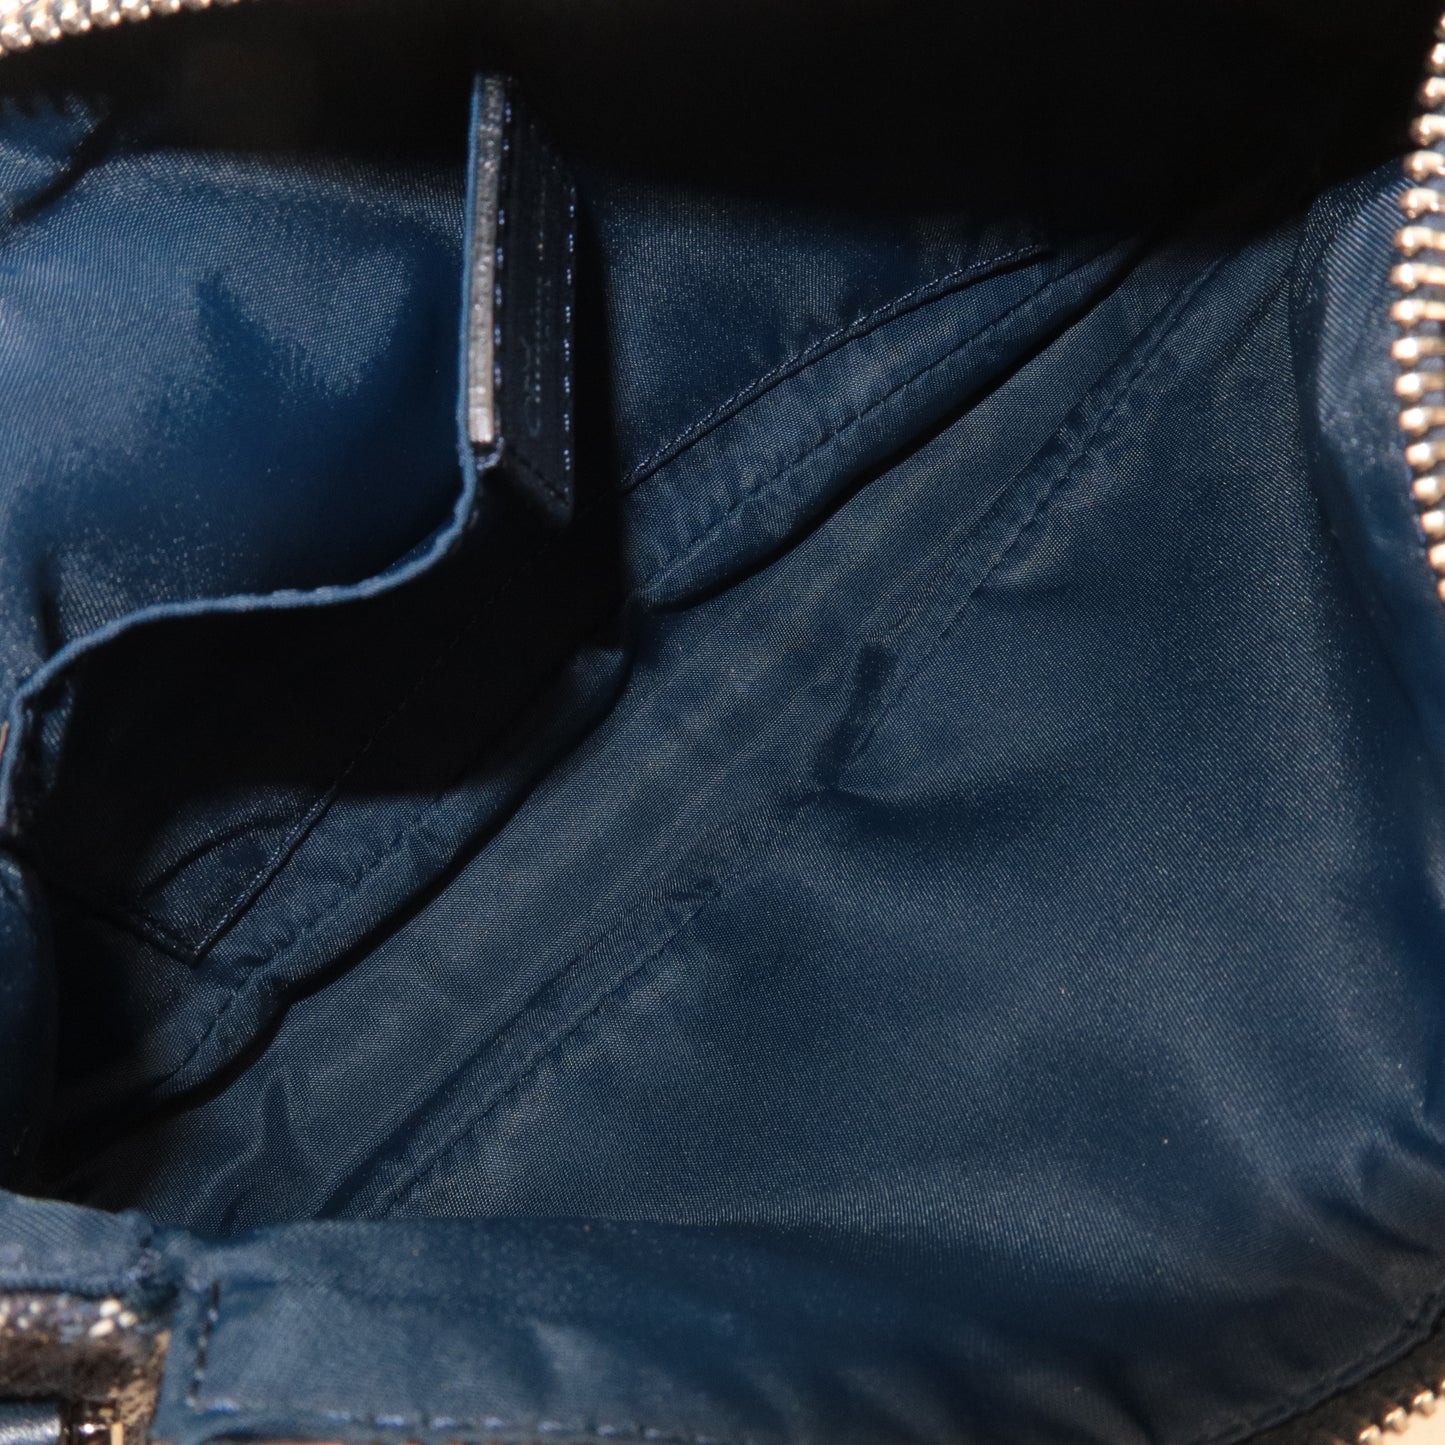 Christian Dior Trotter Canvas Leather Shoulder Bag Navy